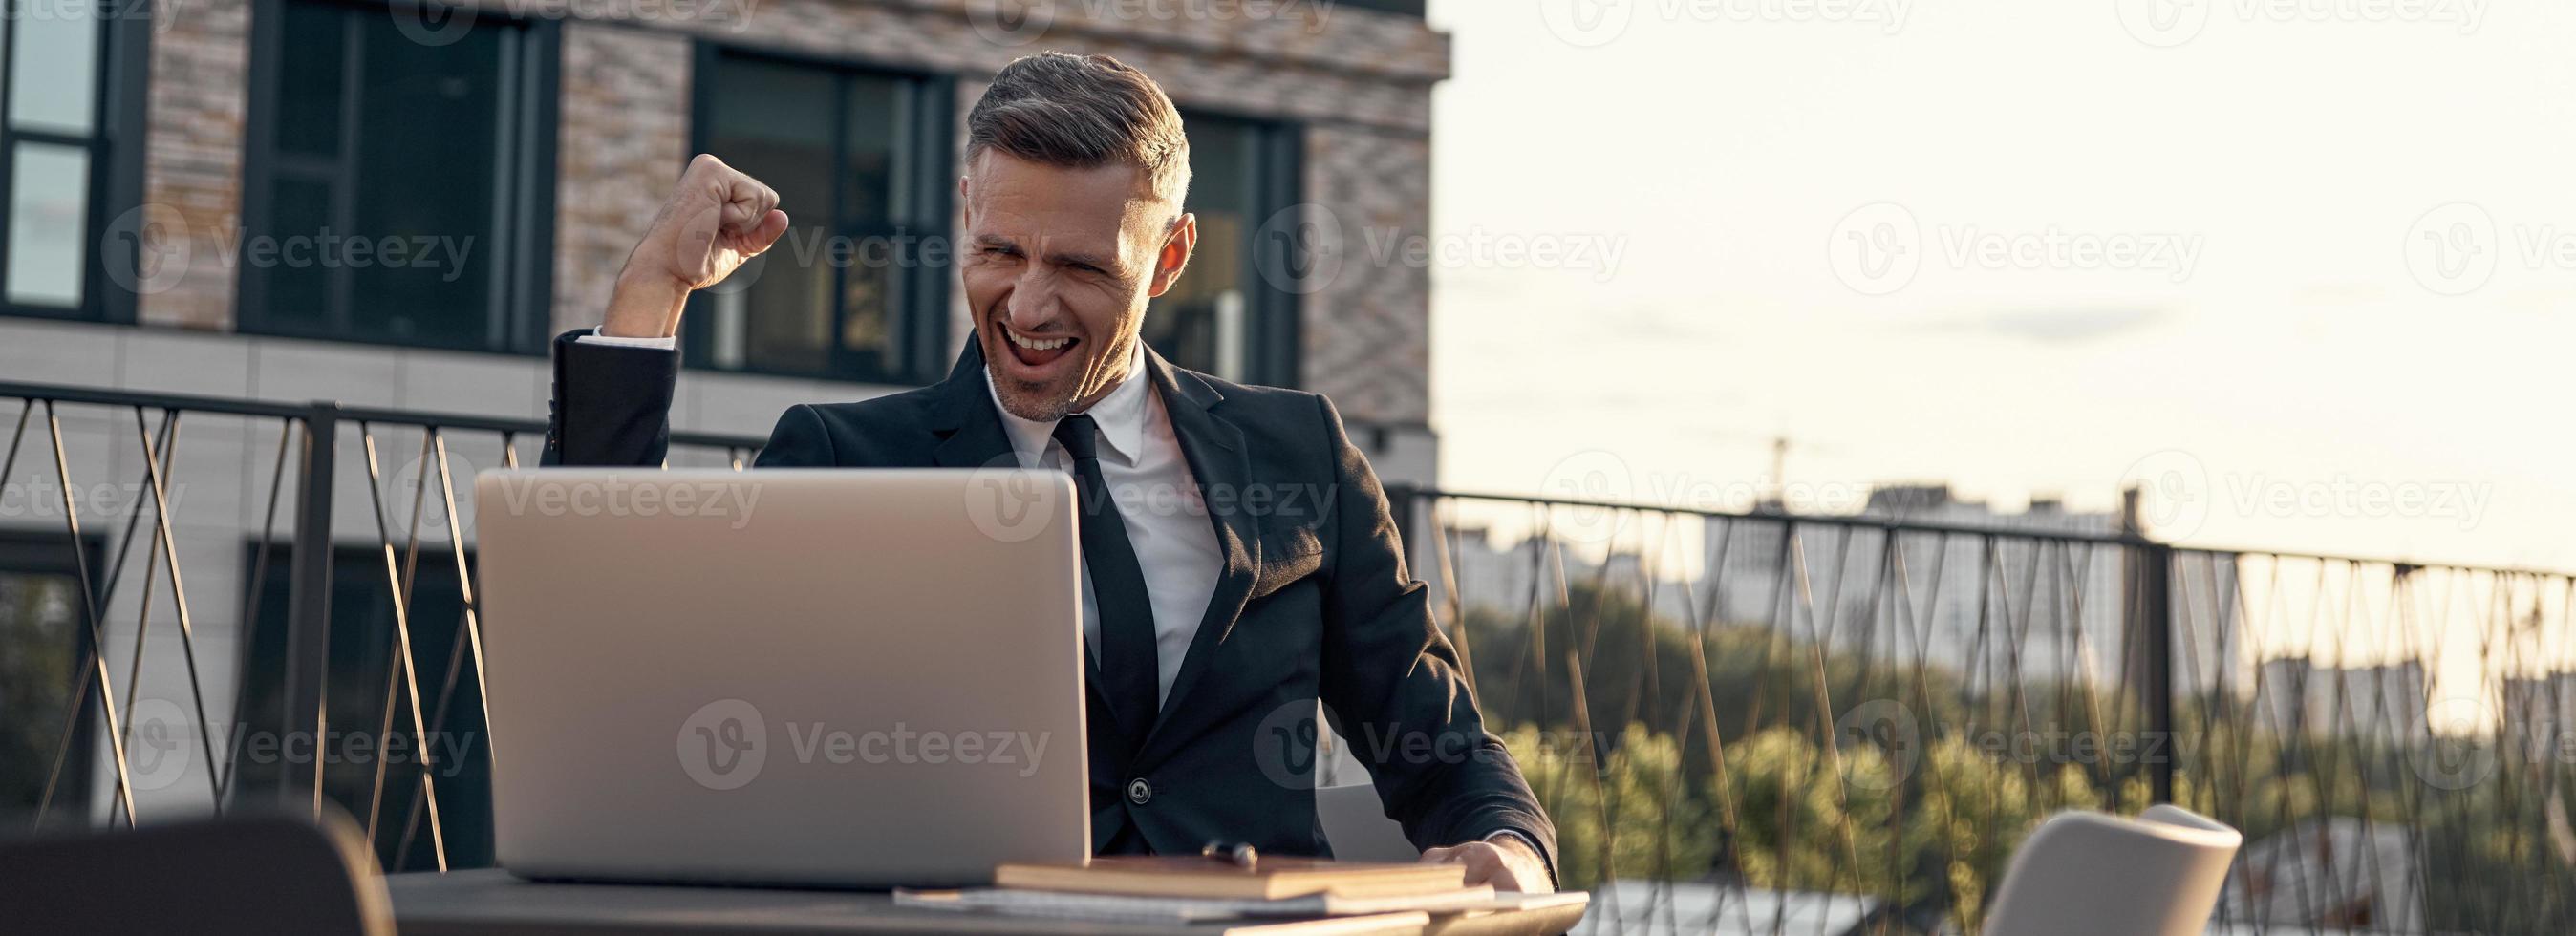 alegre hombre de negocios maduro que tiene una videollamada en una laptop mientras está sentado en un café al aire libre foto